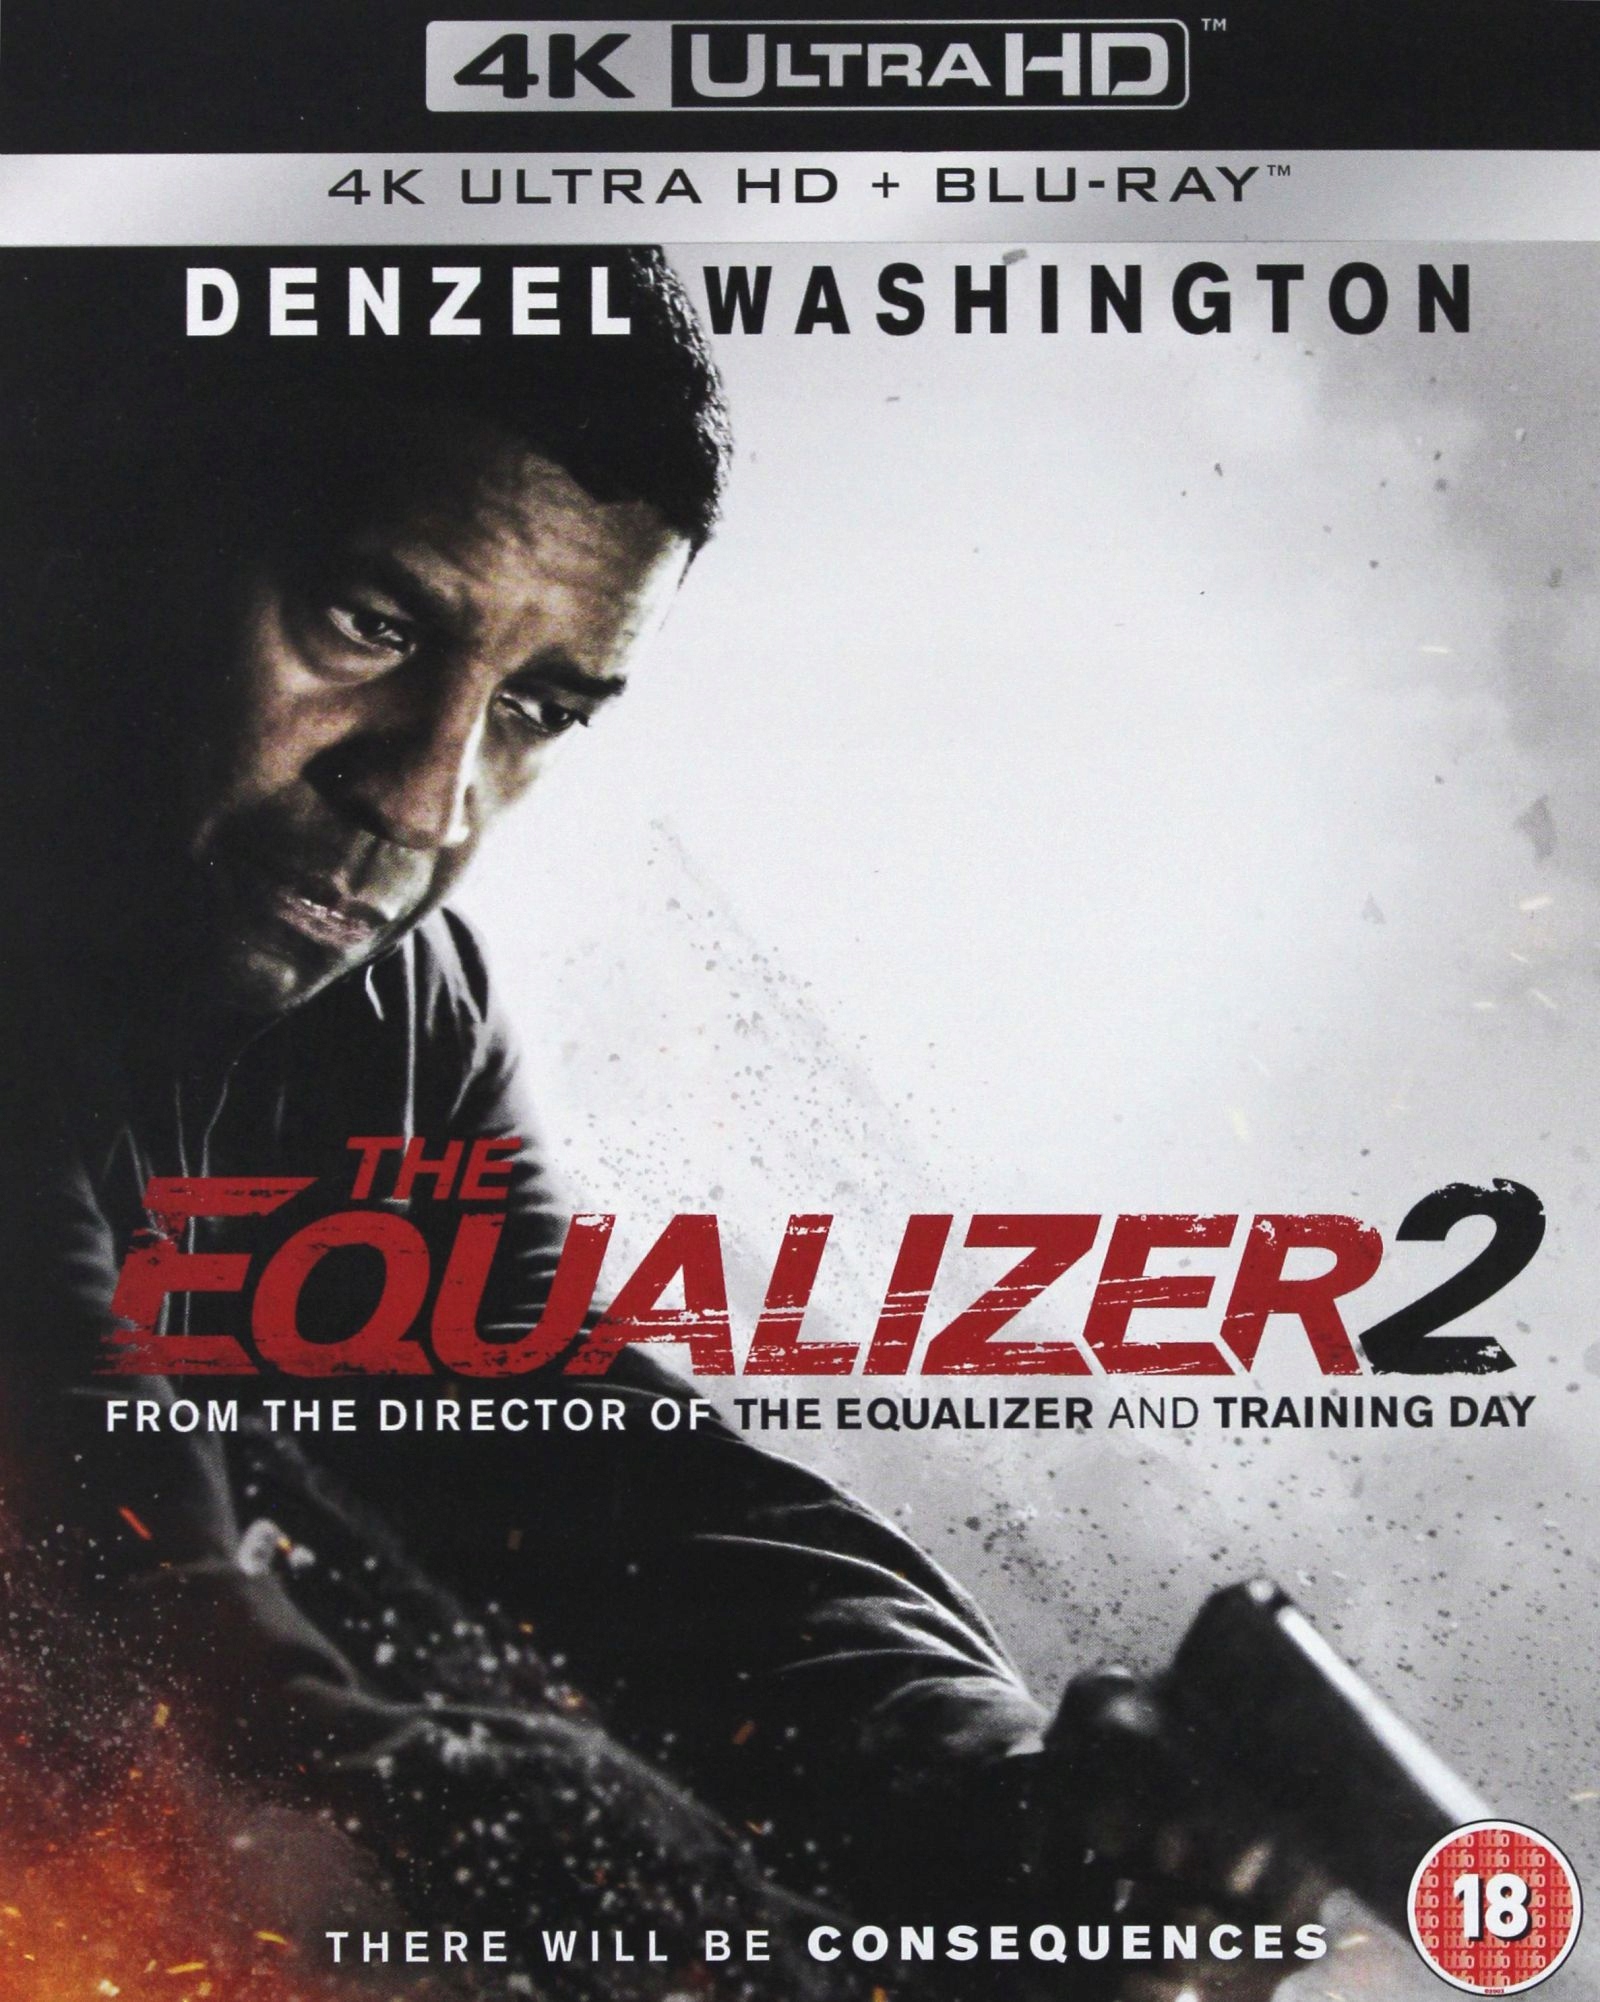 Equalizer 2. Дензел Вашингтон Великий уравнитель. Уравнитель 2. Великий уравнитель 2 (4k UHD Blu-ray). The_Equalizer_2 Великий уравнитель 2 (2018).